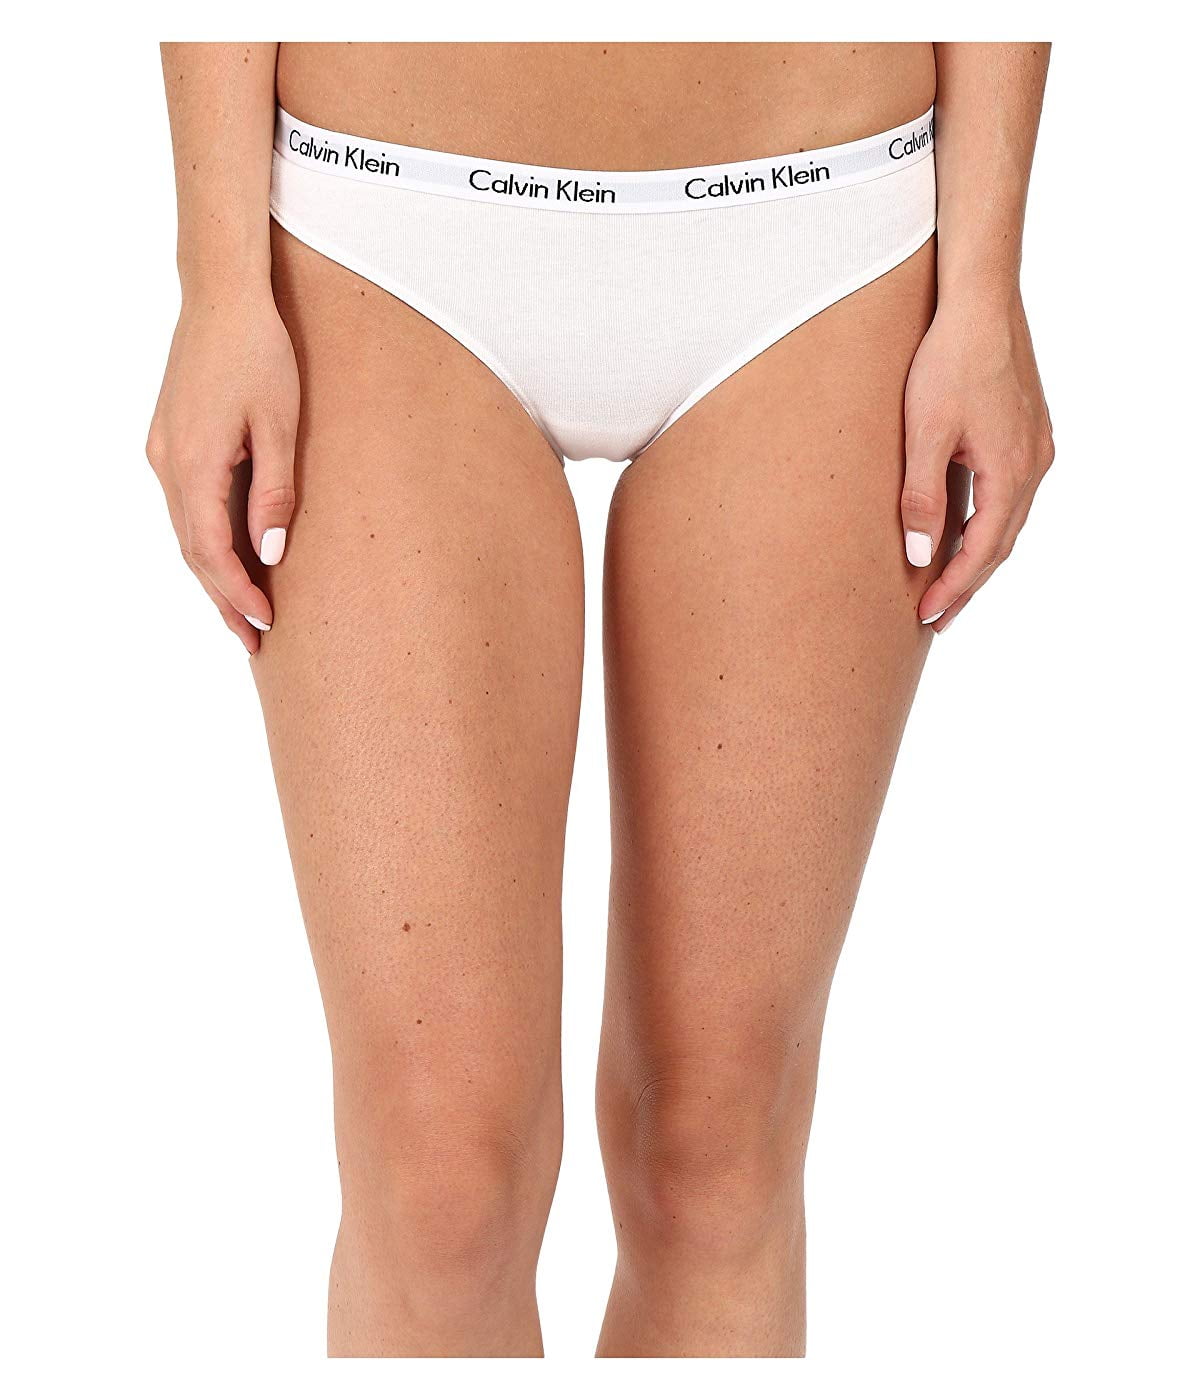 Calvin Klein Underwear Women's Carousel 3 Pack Palestine